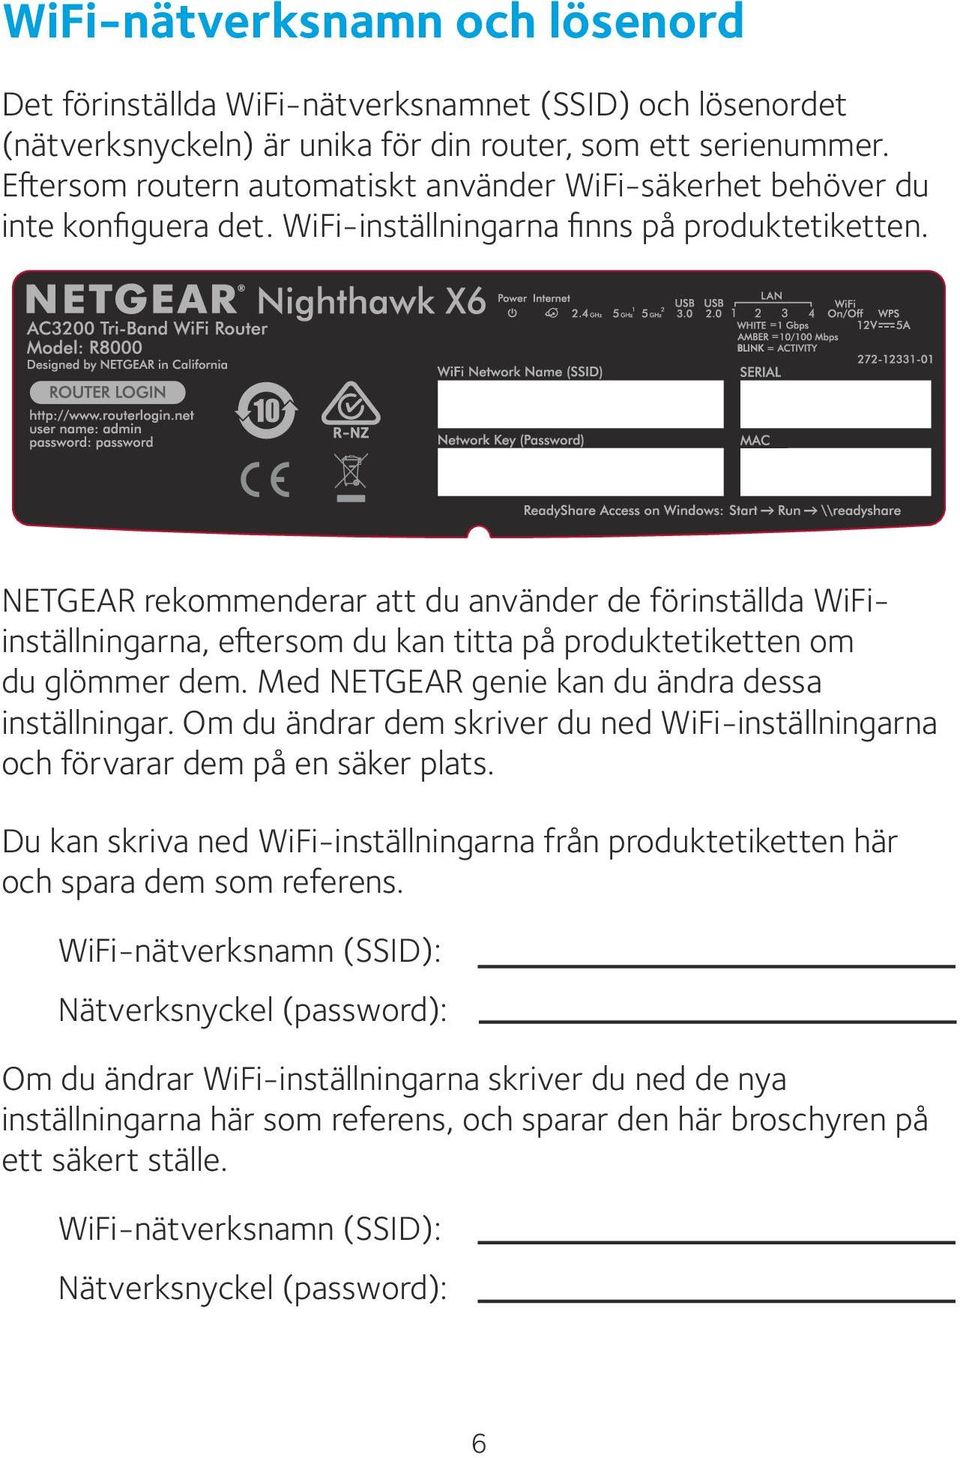 NETGEAR rekommenderar att du använder de förinställda WiFiinställningarna, eftersom du kan titta på produktetiketten om du glömmer dem. Med NETGEAR genie kan du ändra dessa inställningar.